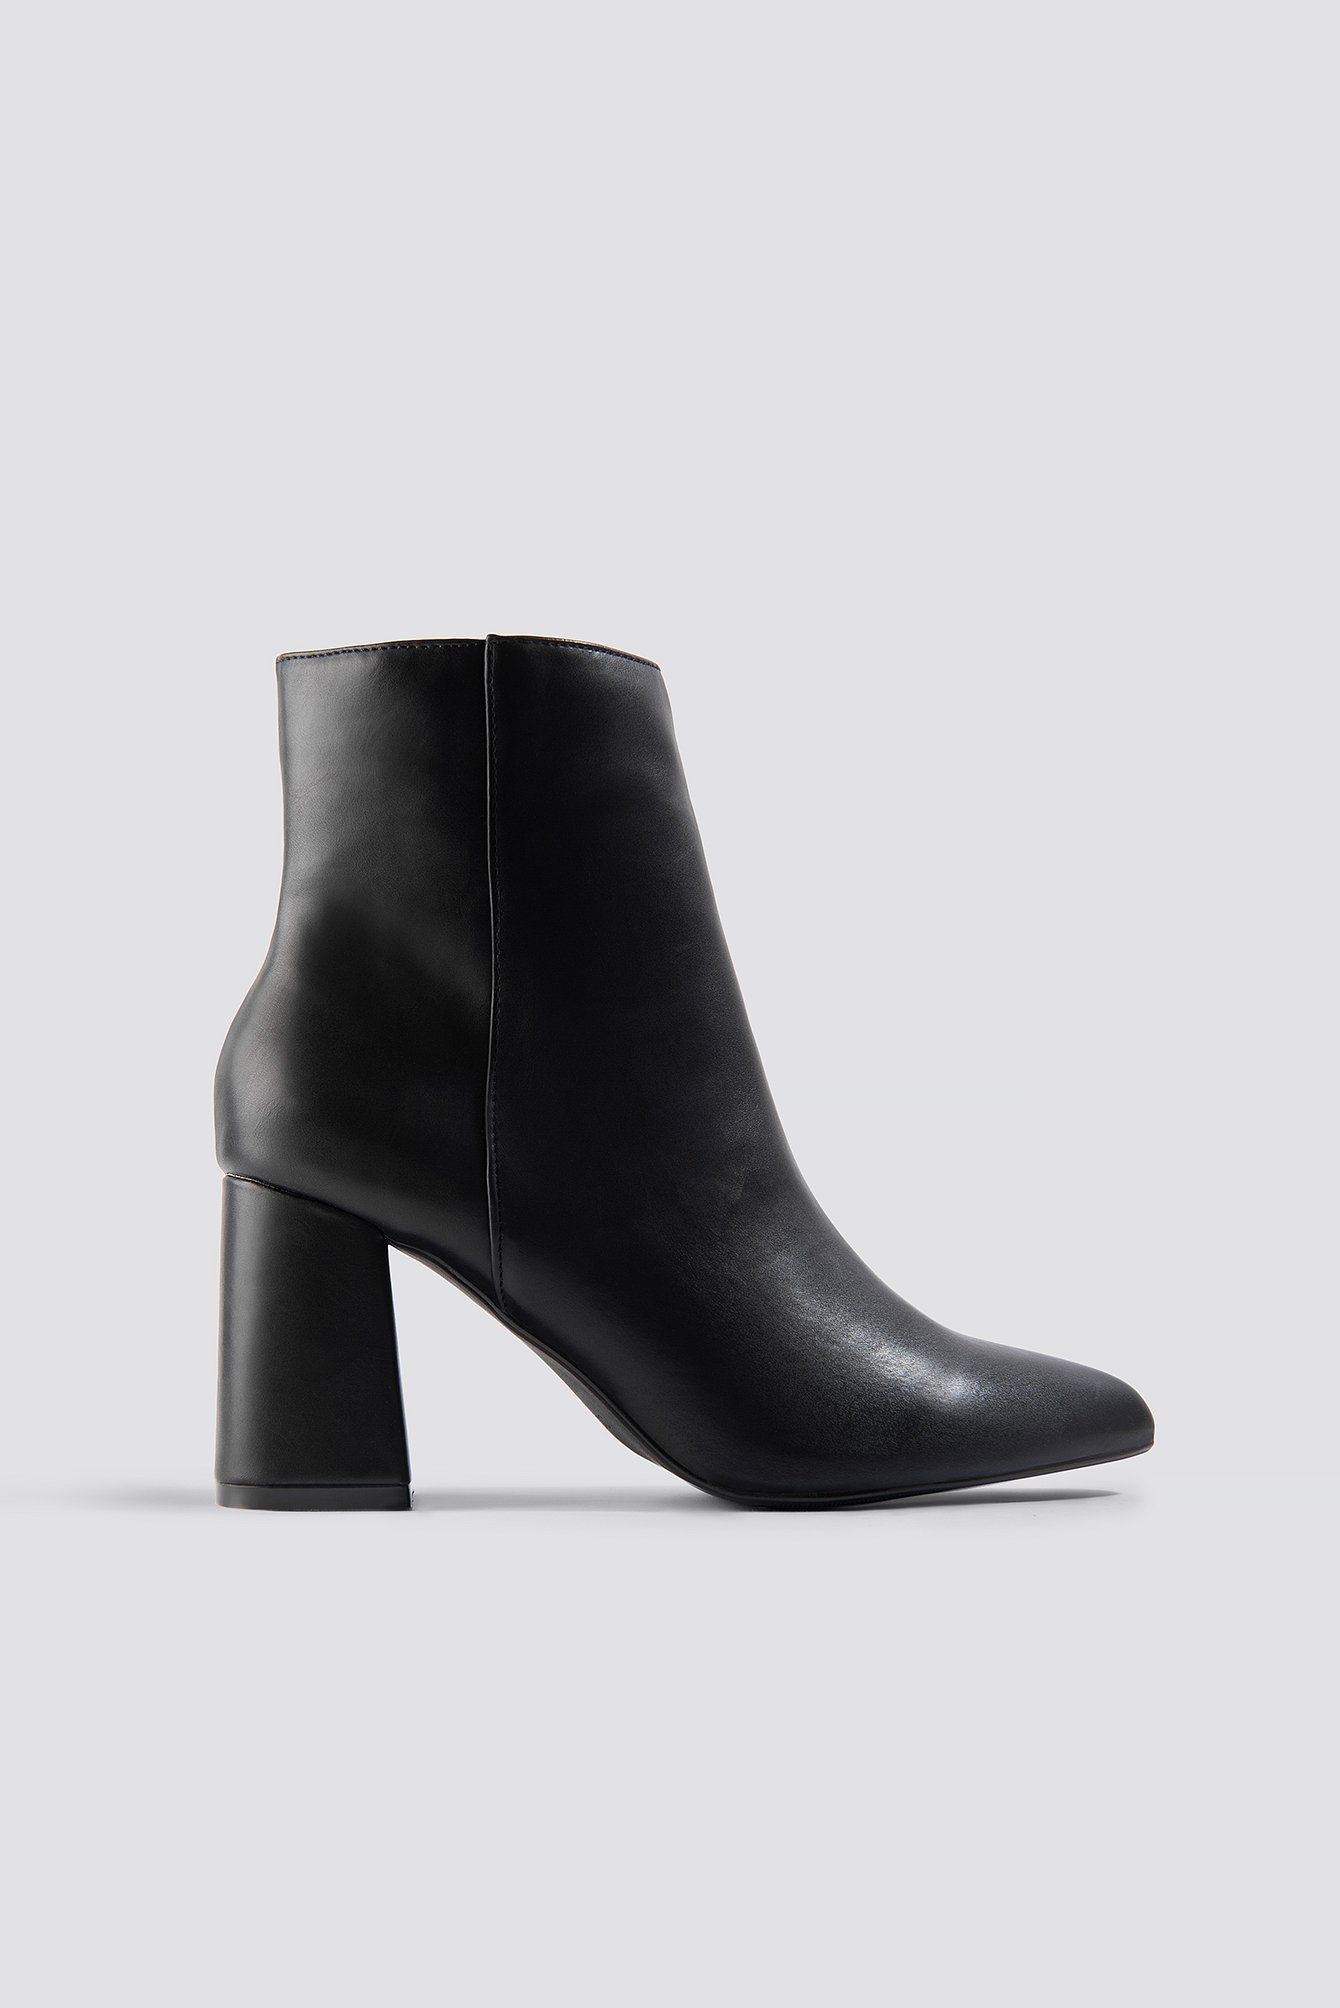 black booties heel